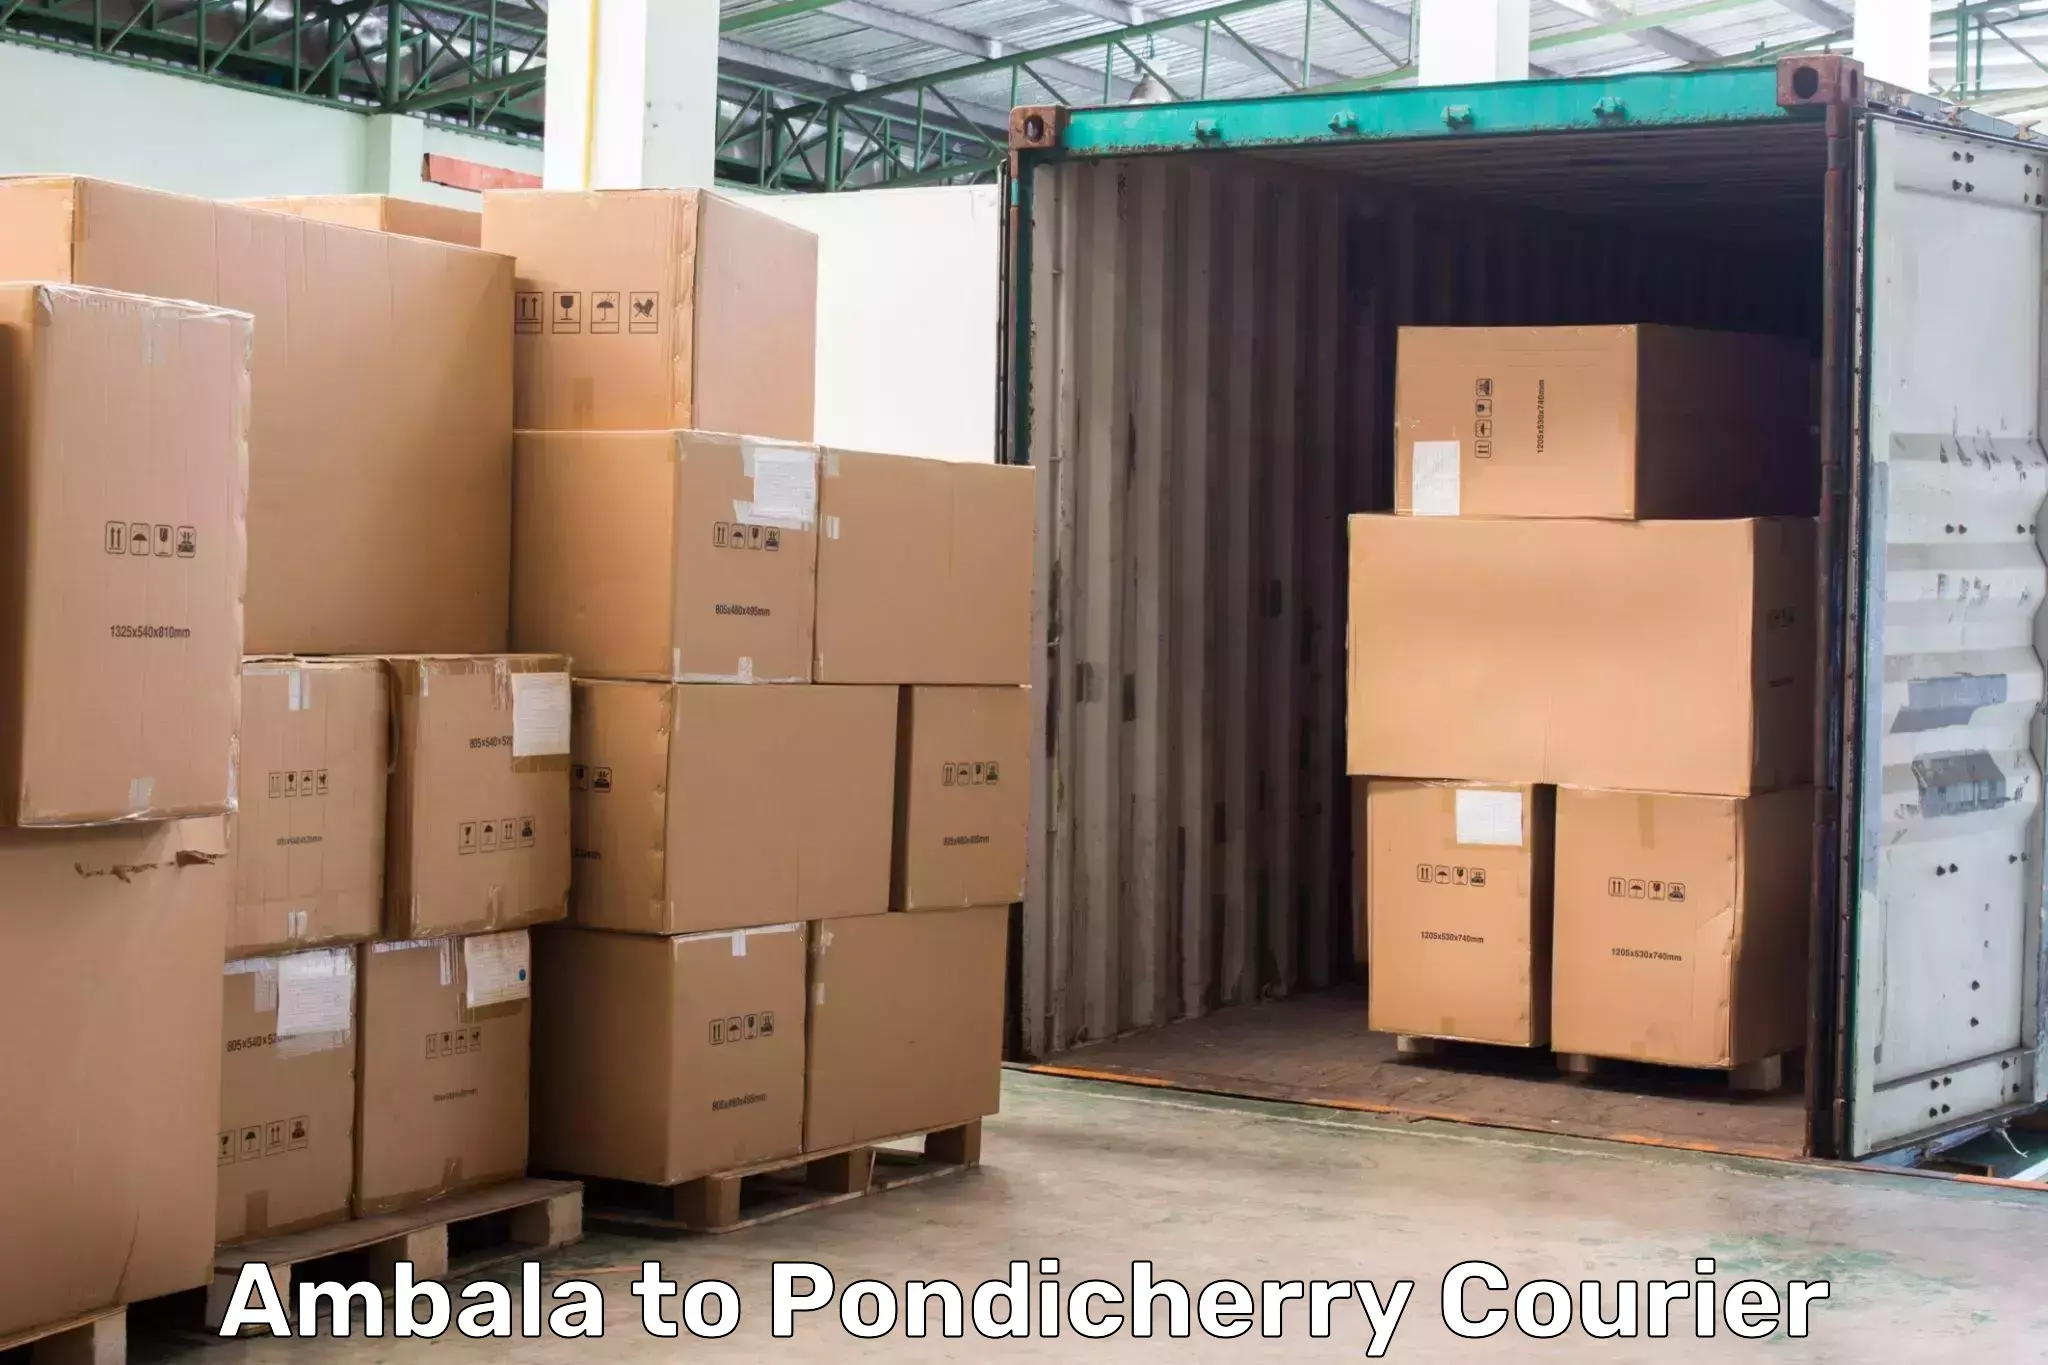 Express logistics service Ambala to Pondicherry